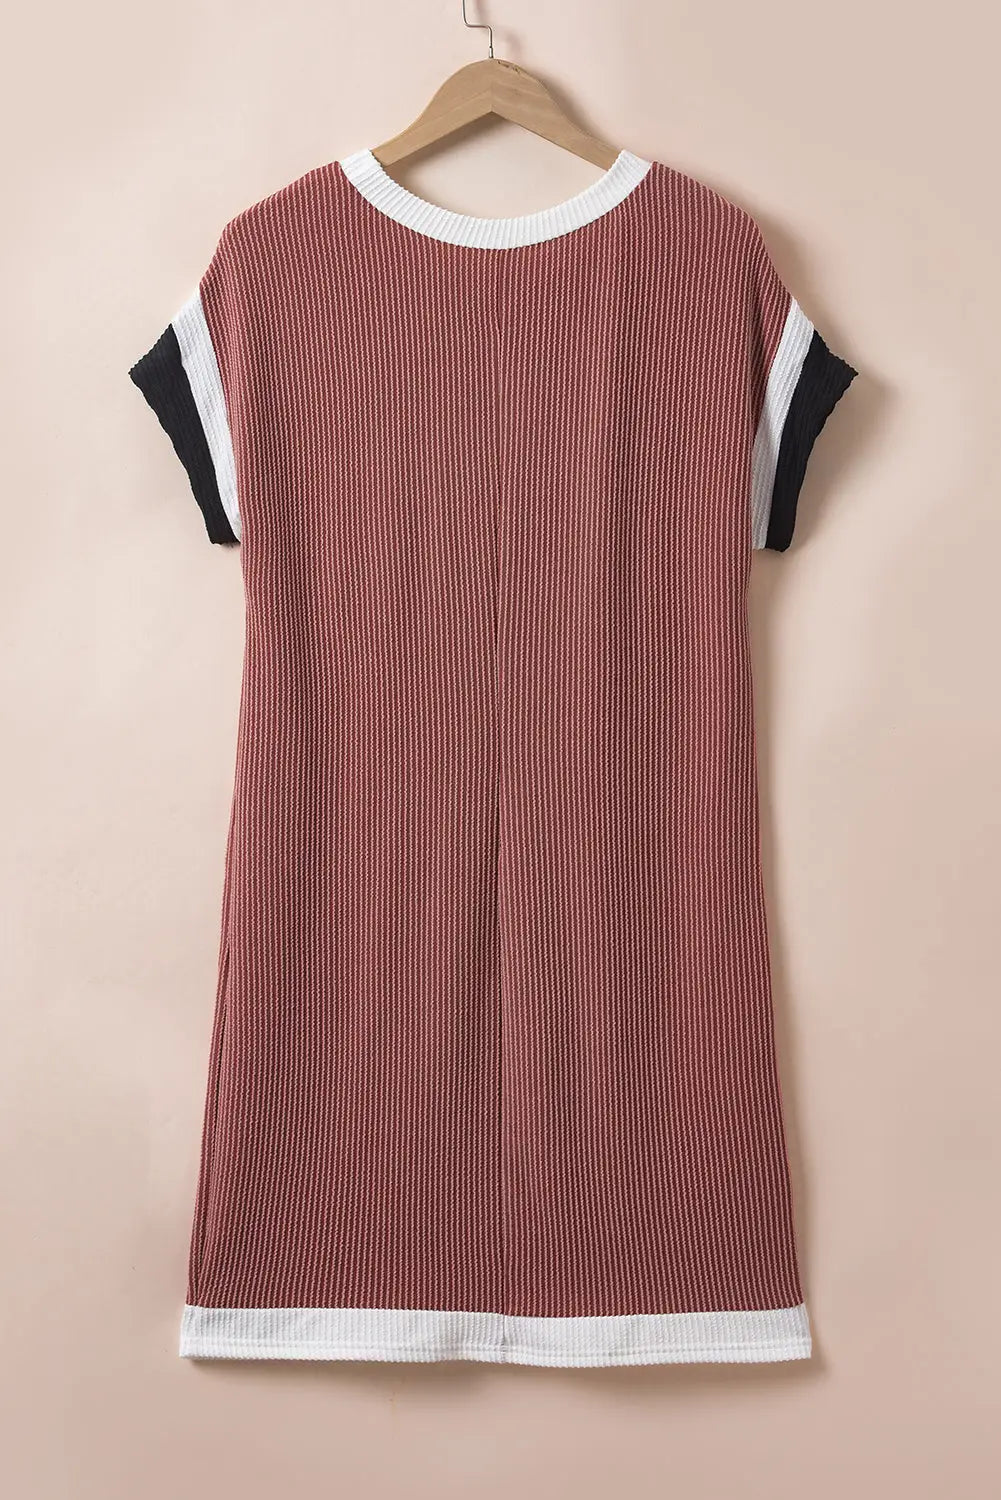 Moonlight jade textured t-shirt dress - dresses/t shirt dresses